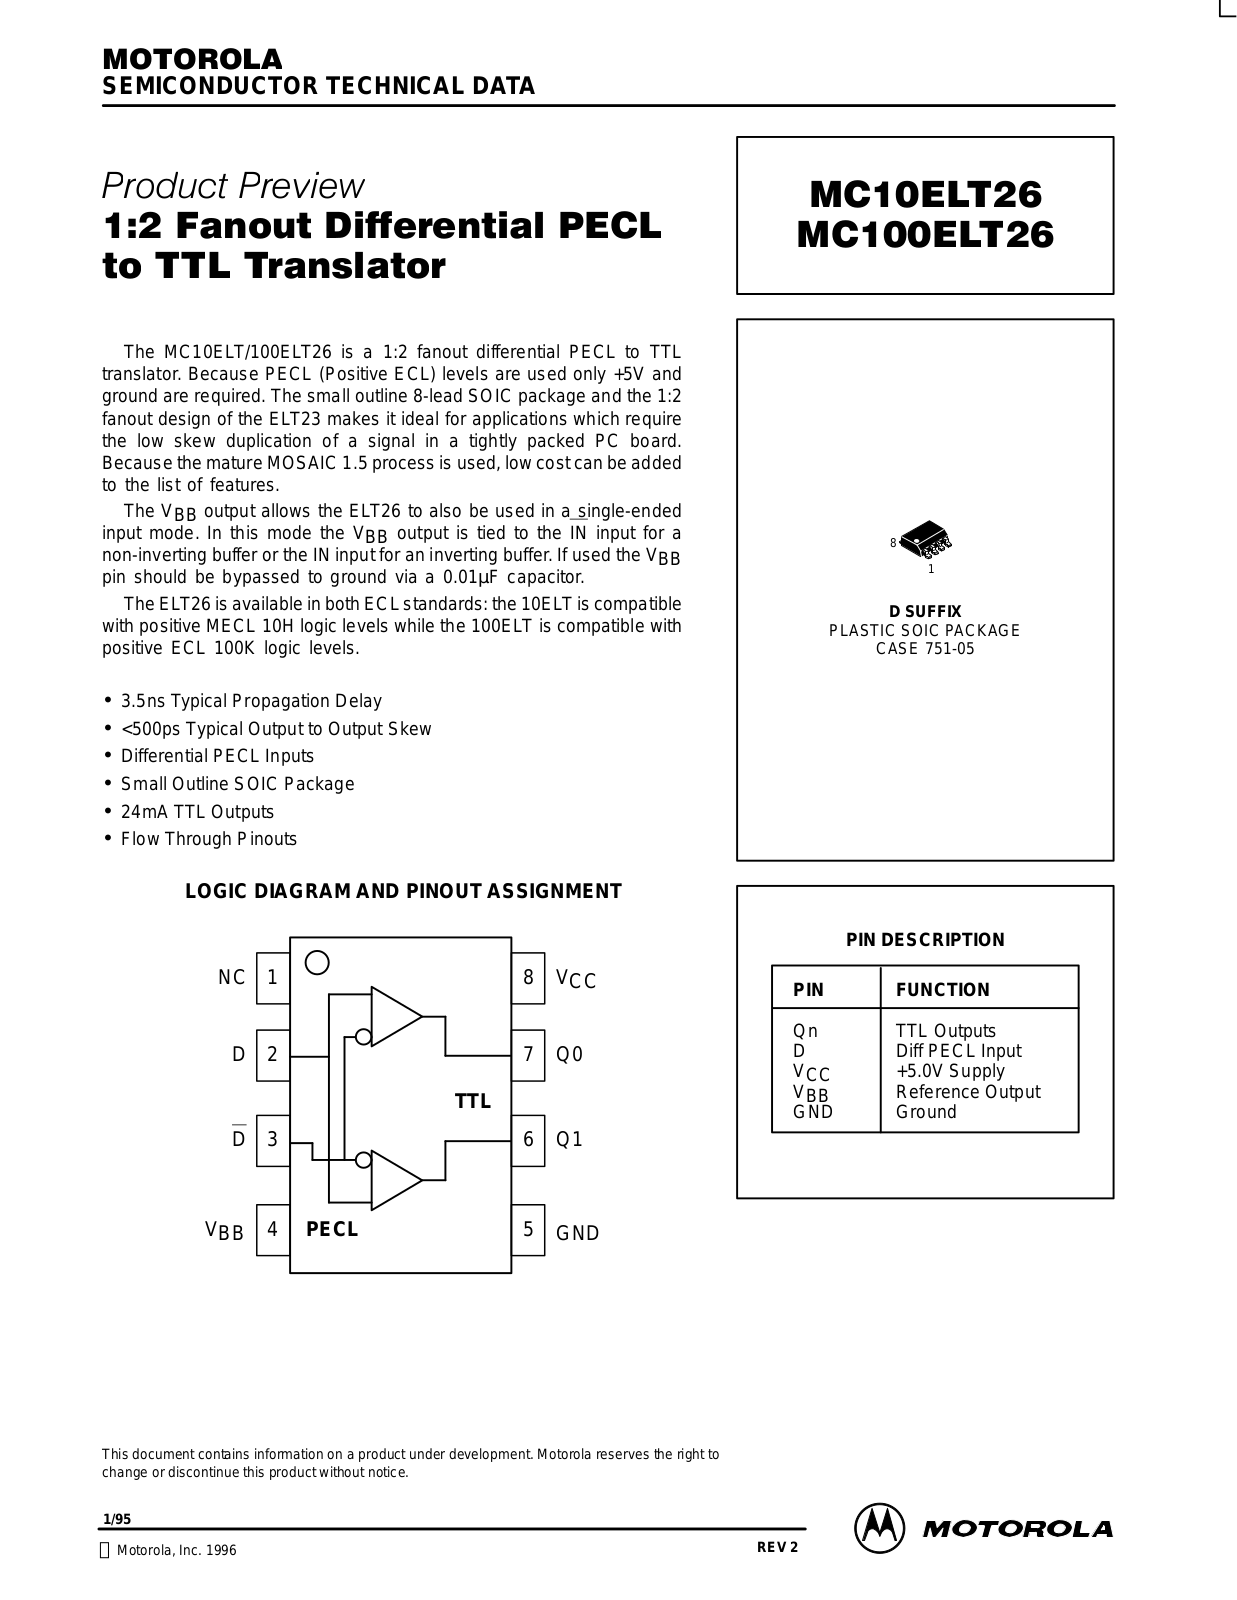 Motorola MC10ELT26D, MC100ELT26D Datasheet